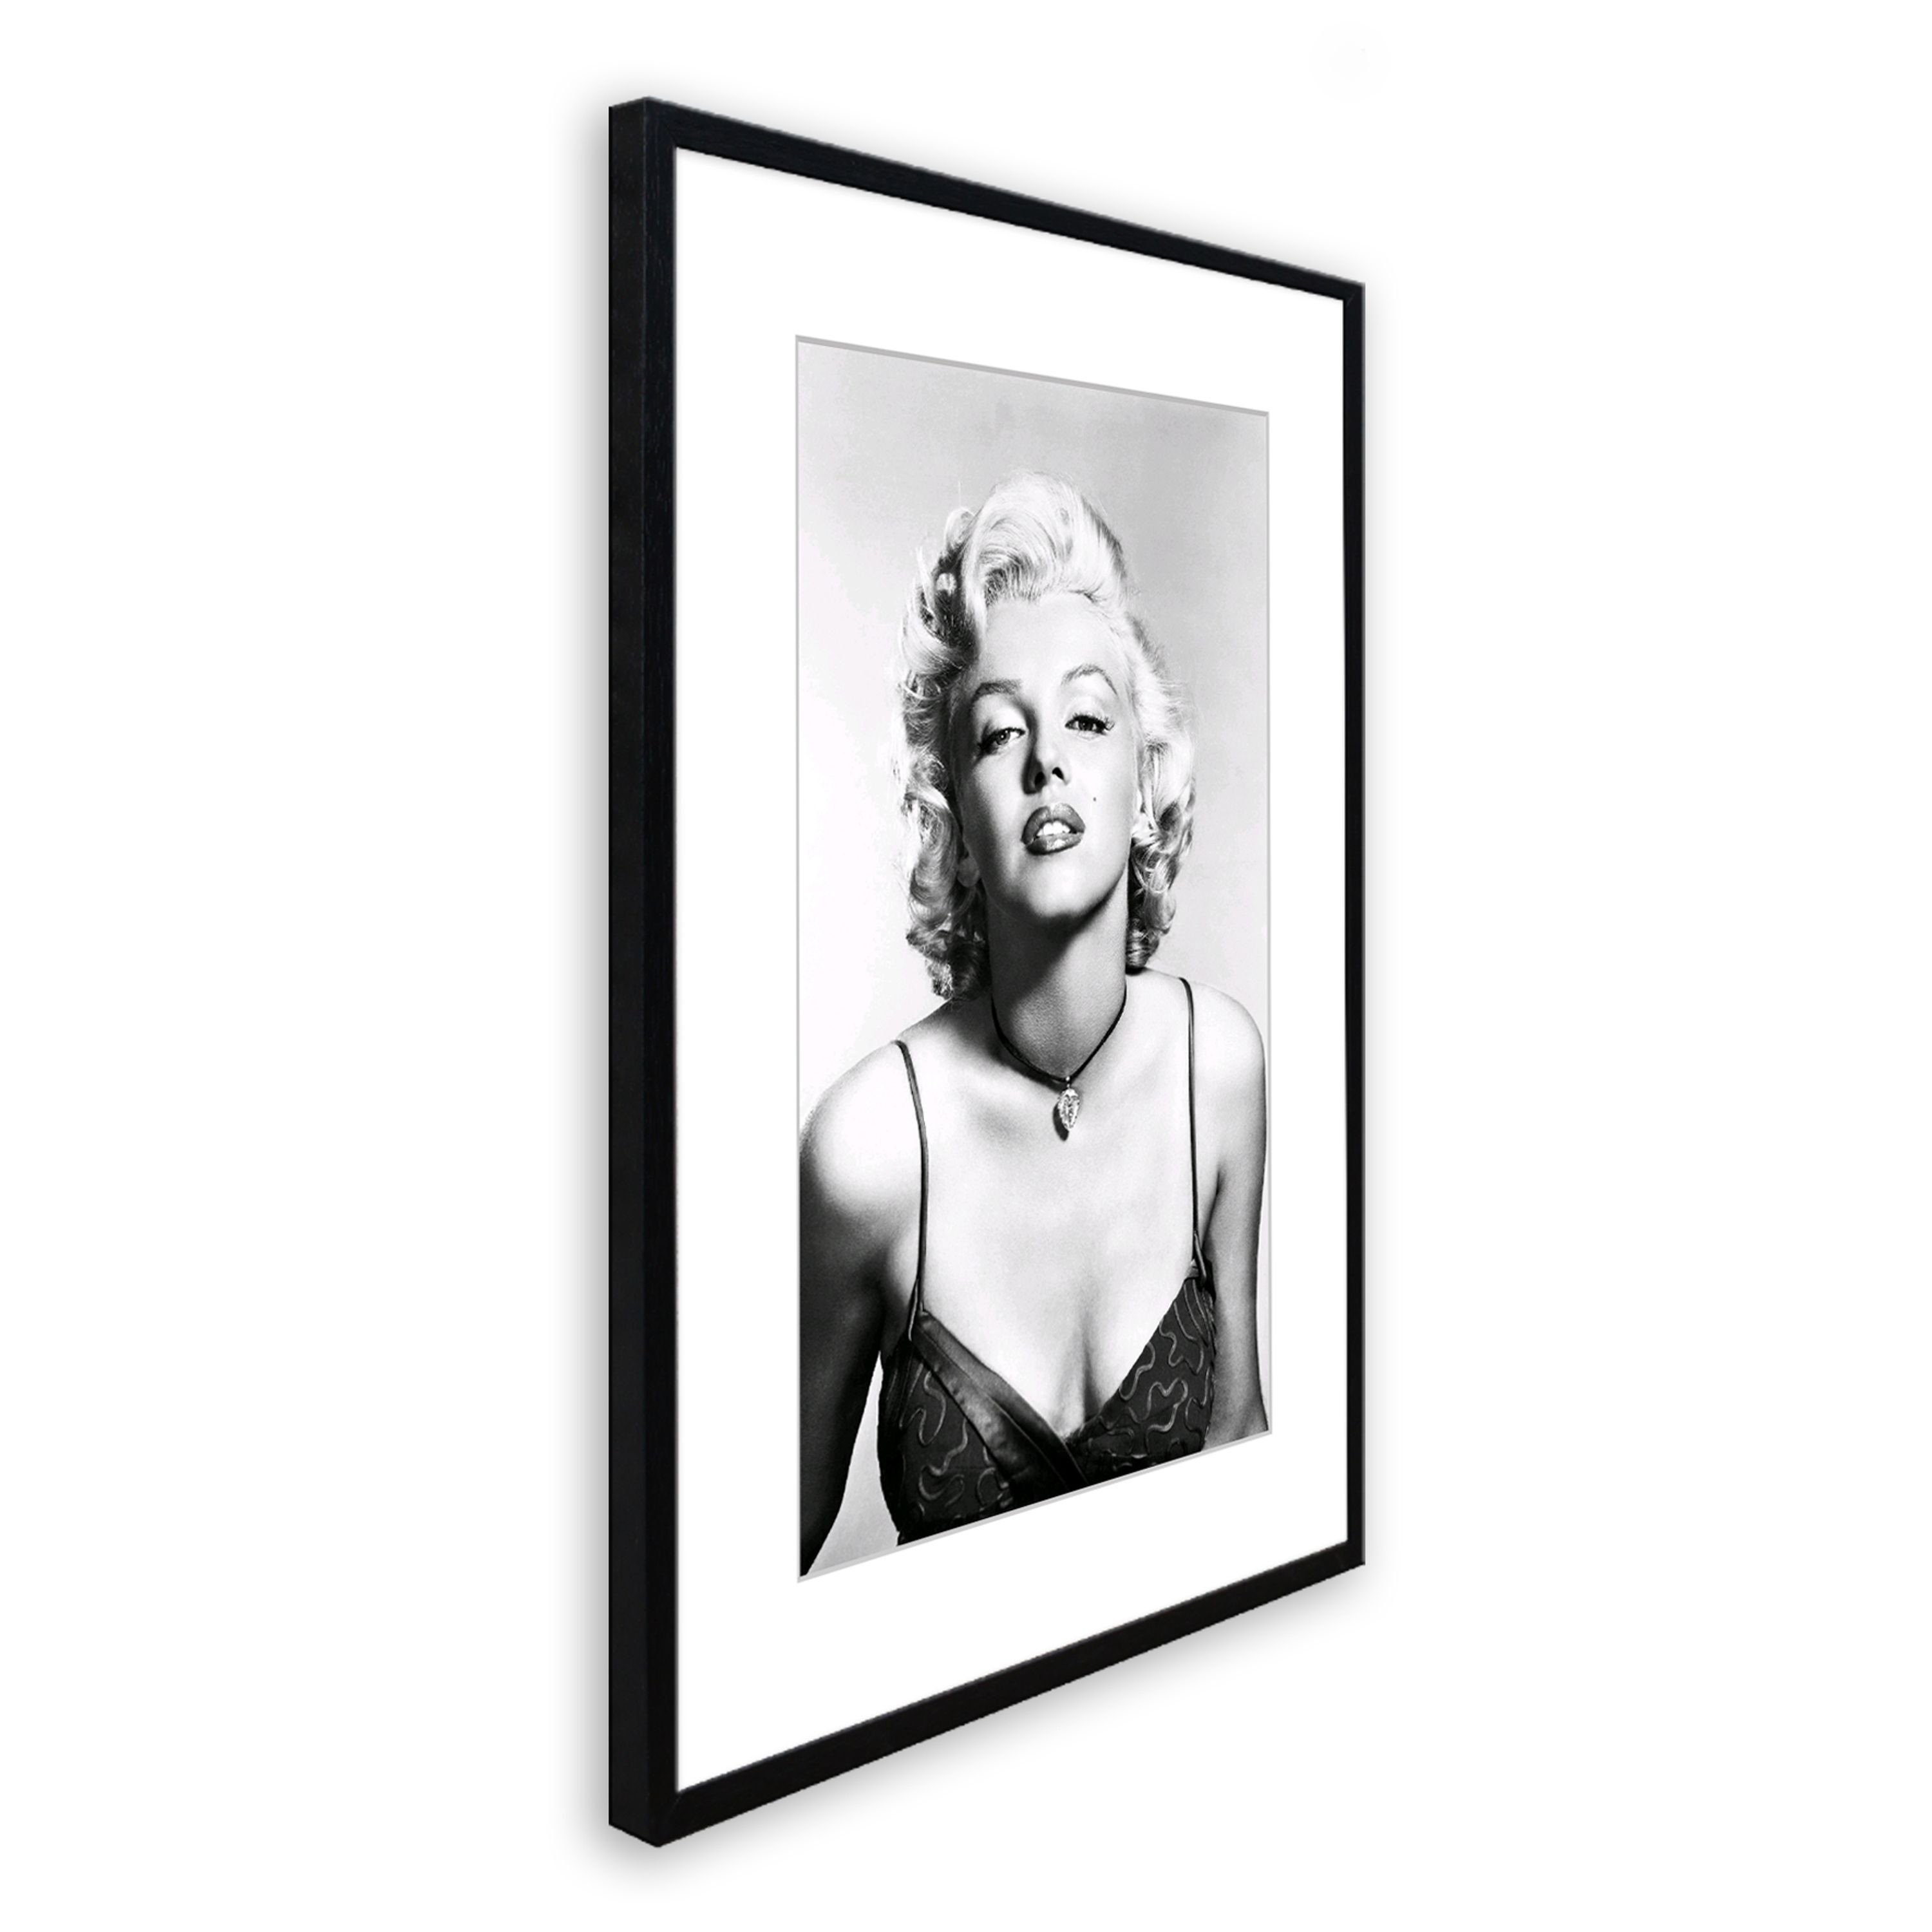 Monroe Rahmen Marilyn mit Bild schwarz-weiß Marilyn / Bild artissimo / Film-Star: Rahmen gerahmt Poster mit Monroe, 51x71cm